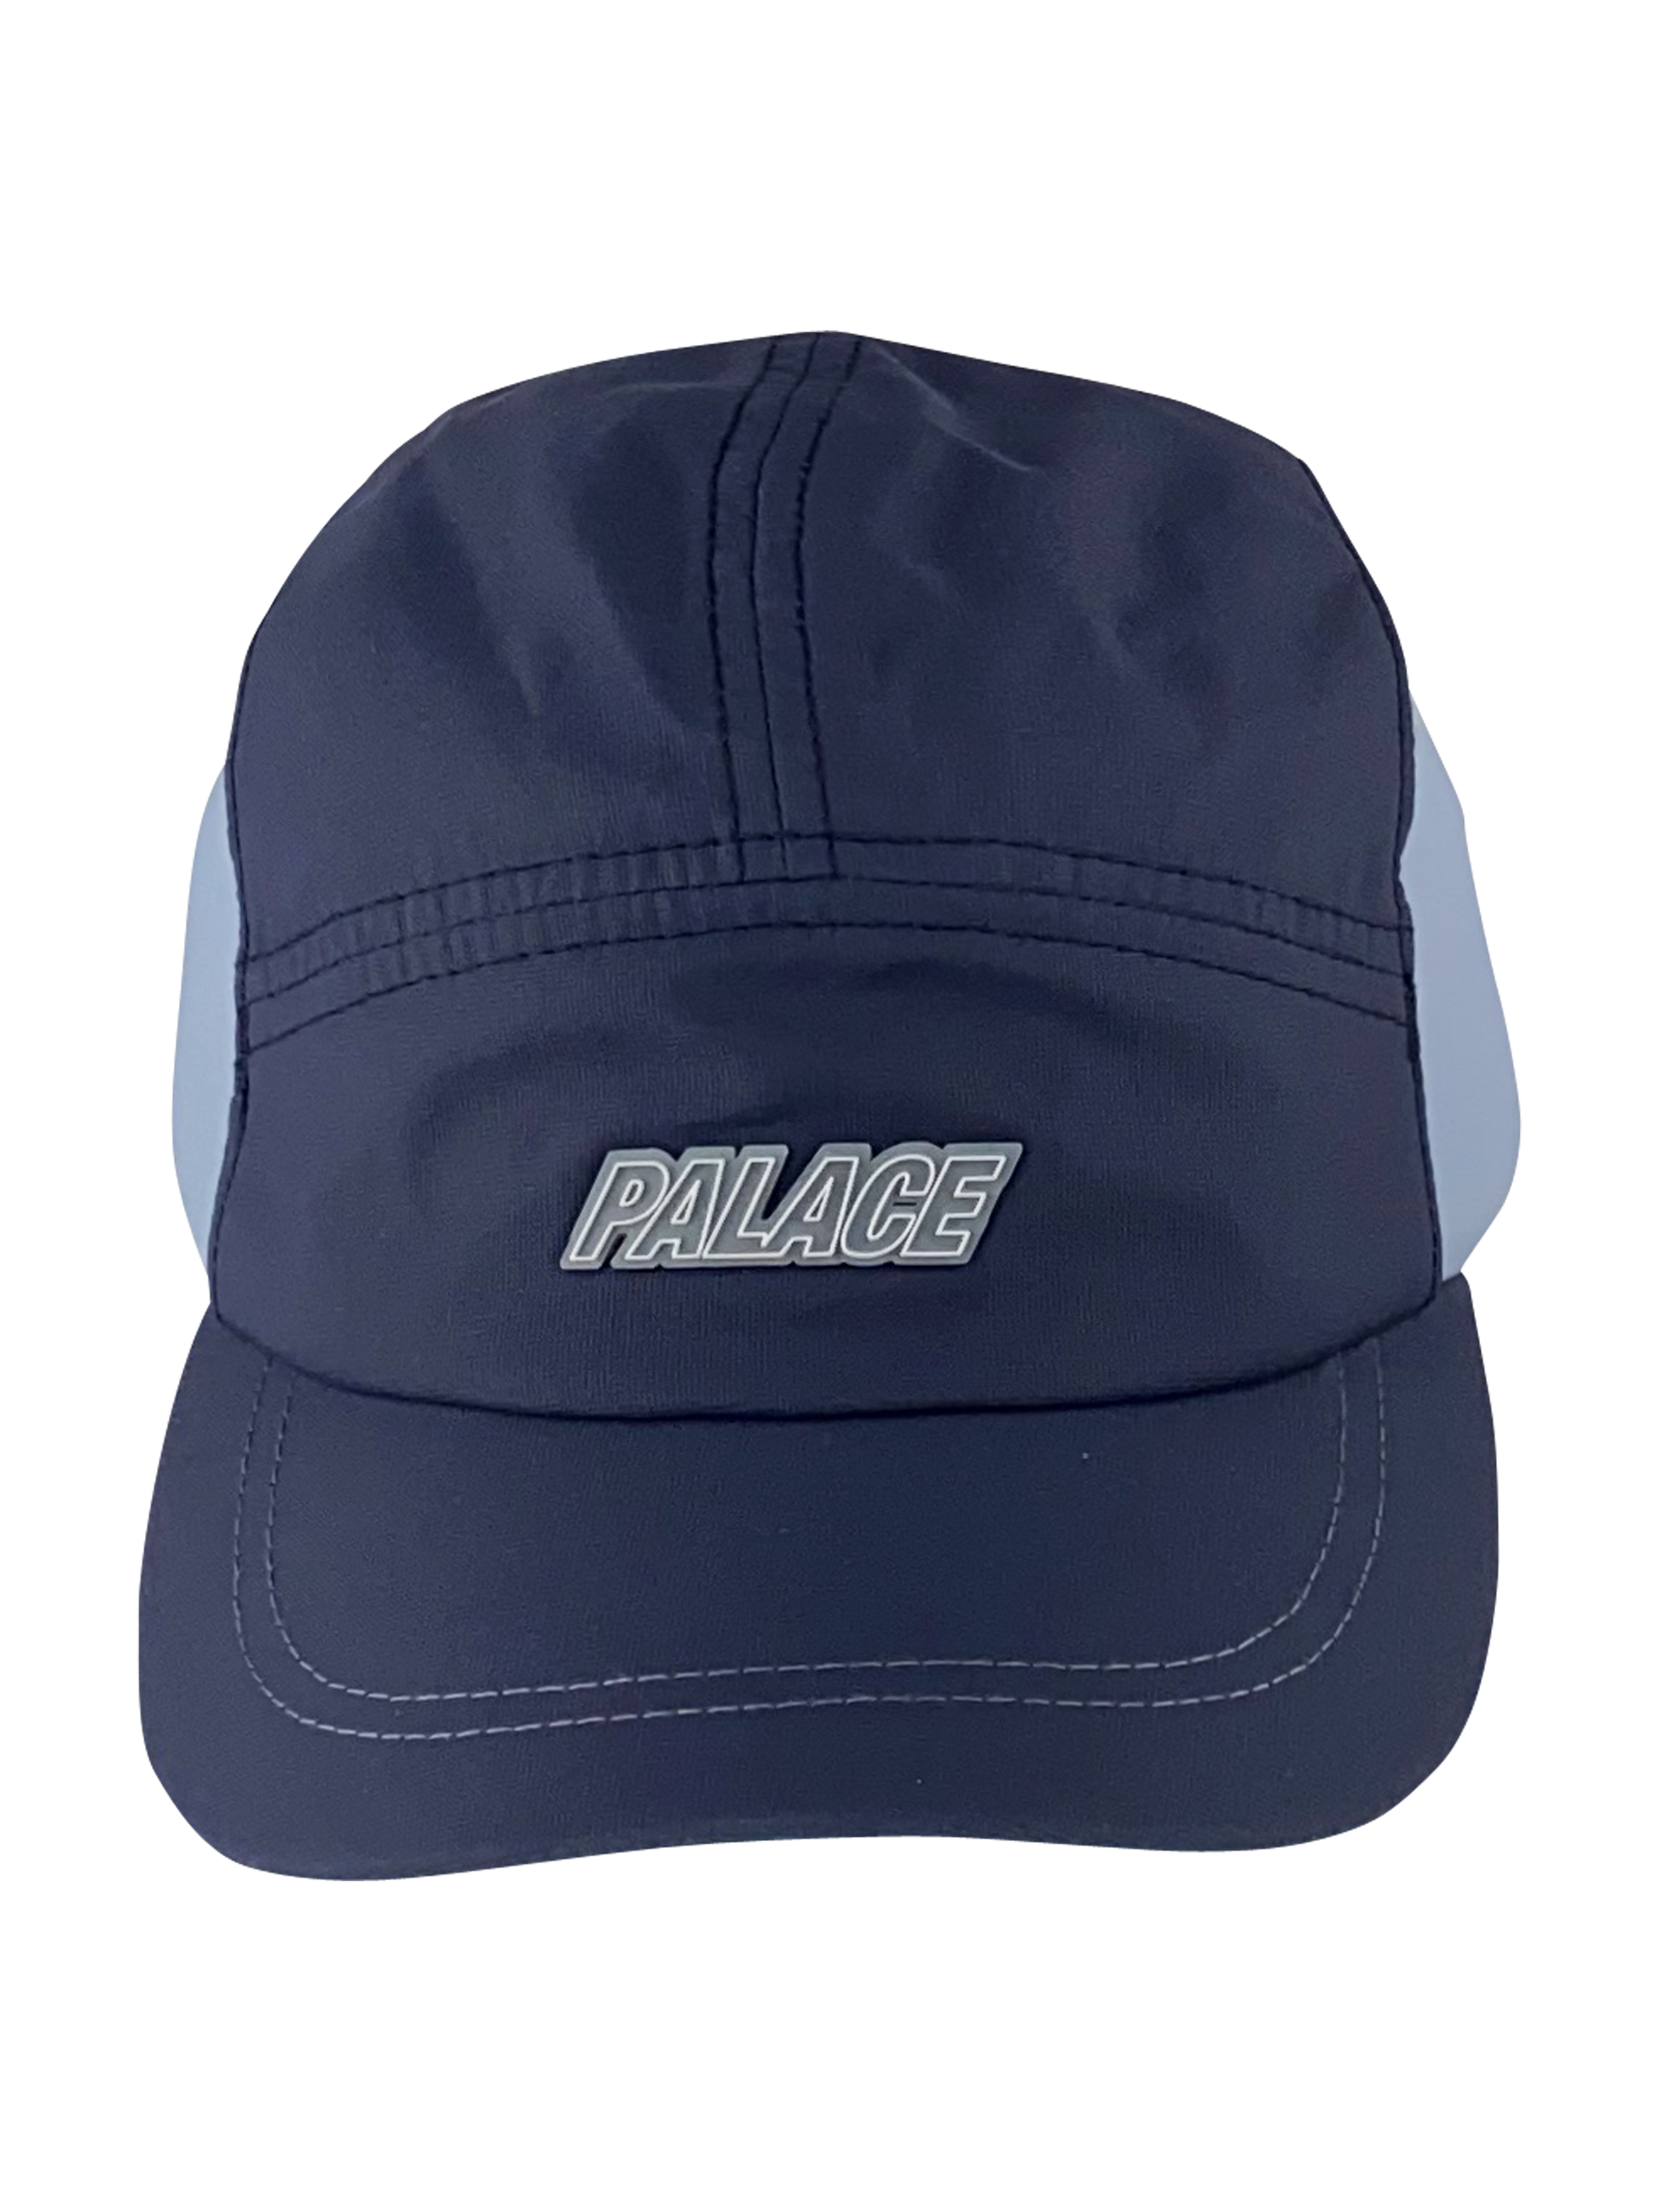 Palace Cap “Vent Shell Runner“ - Blue,3D Palace Logo auf der Frontseite Blau , 2 farbige Cap, die Seiten sind hellblau abgesetzt